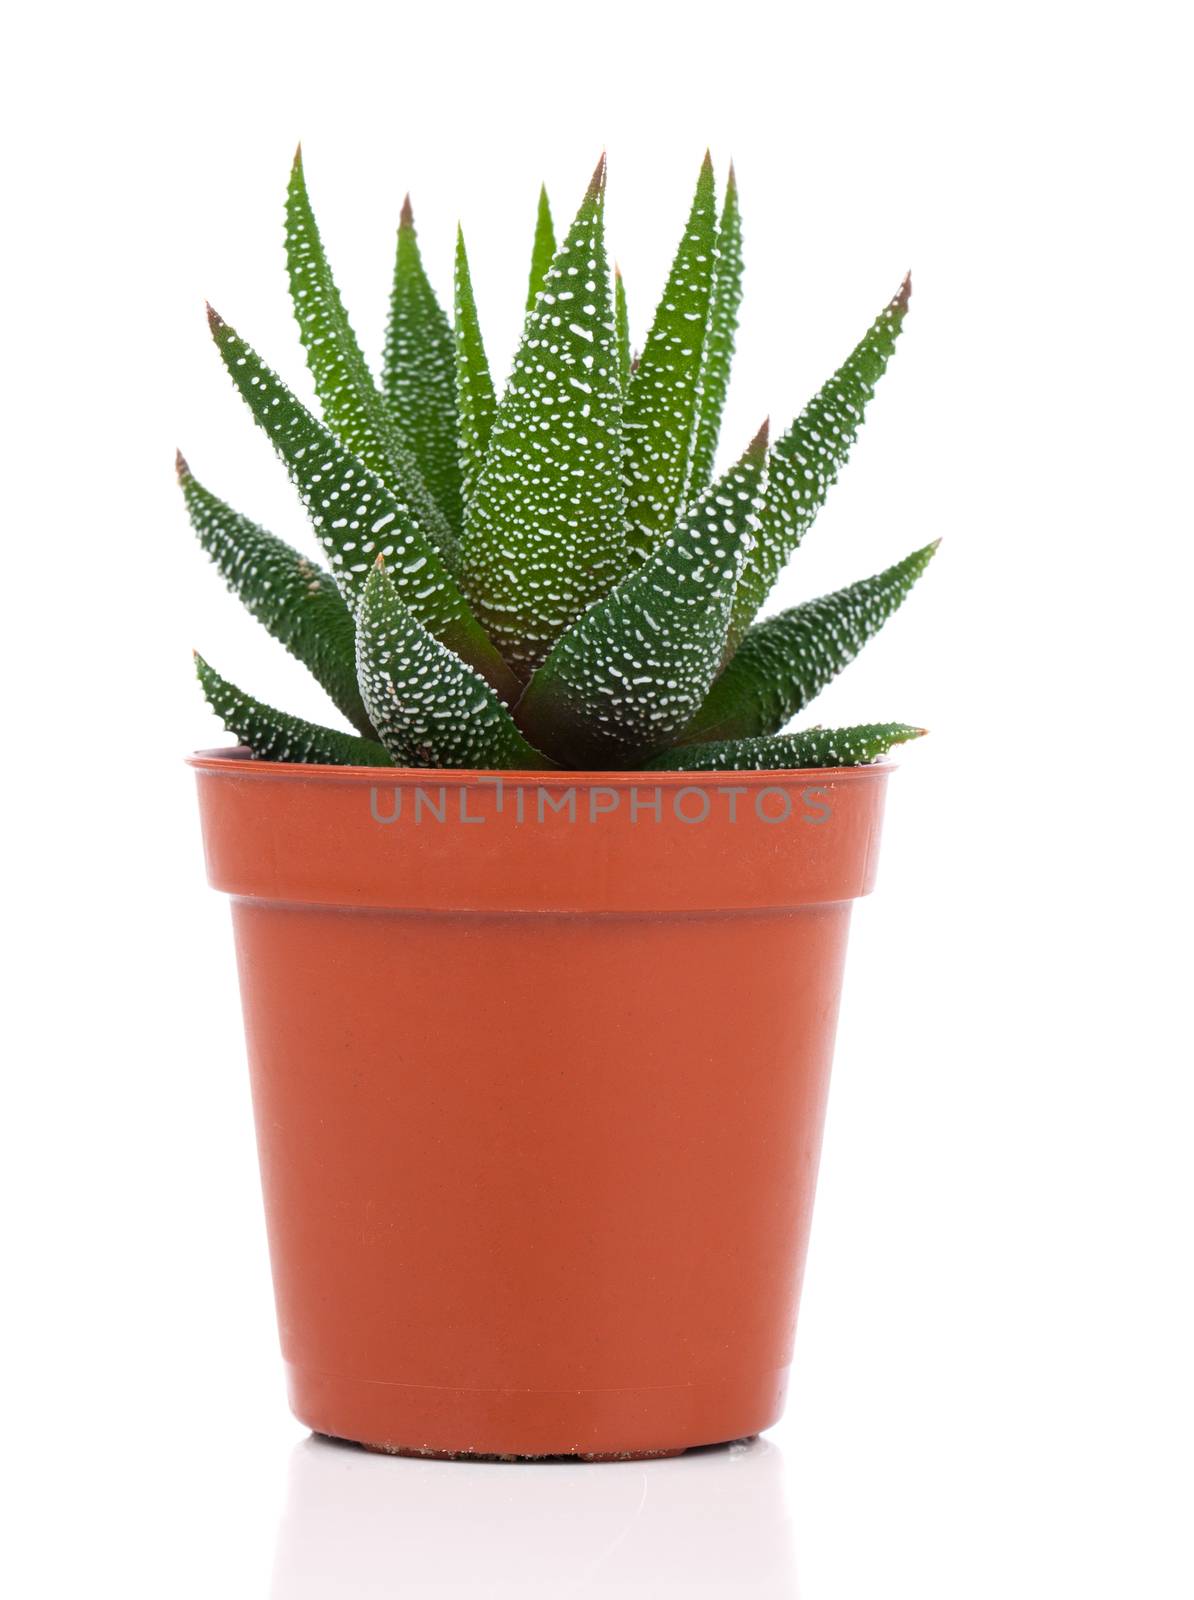 Haworthia Mix, cactus, succulent plant on white background by motorolka